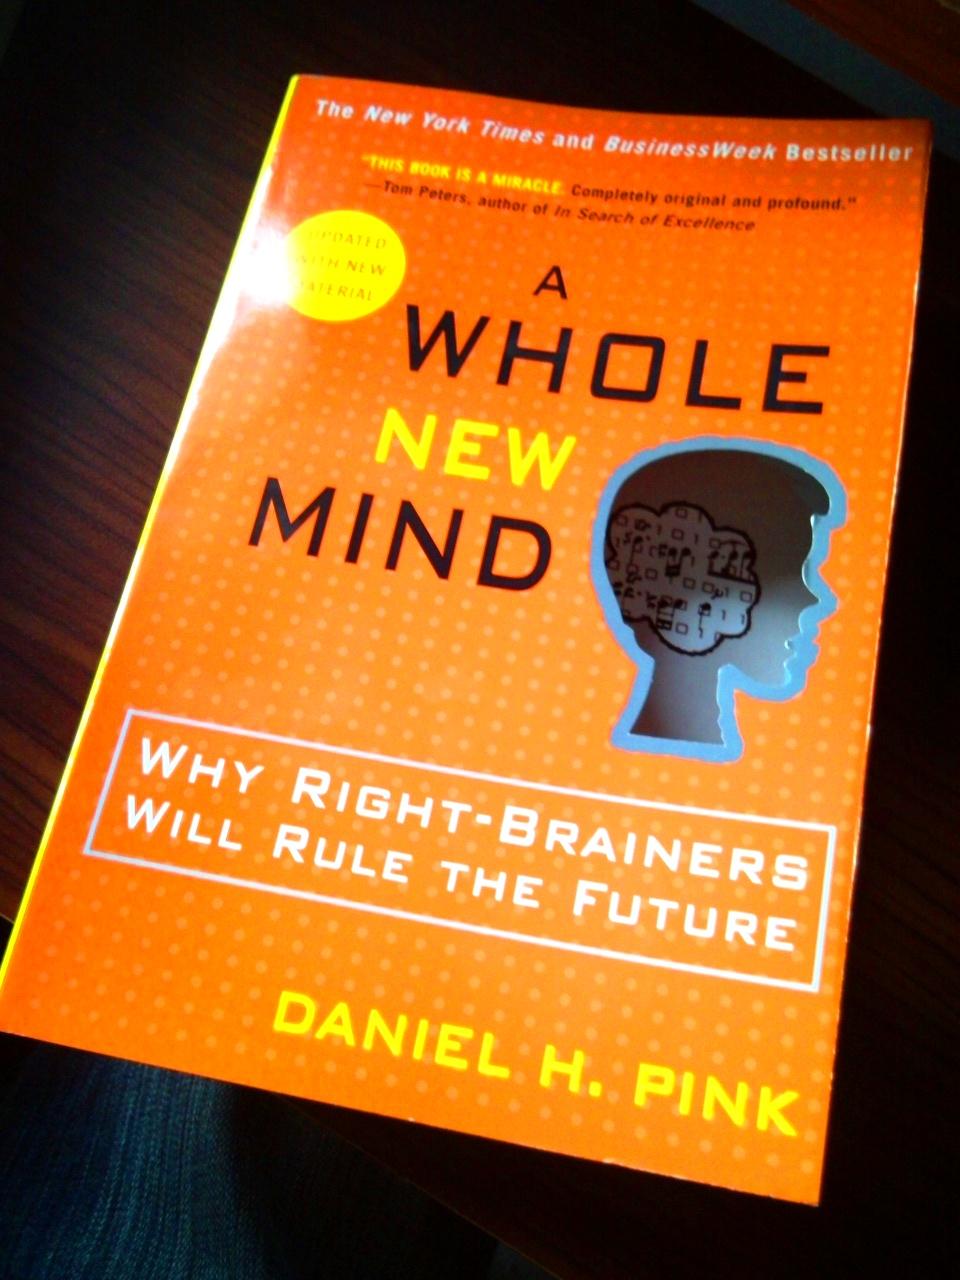 أفضل كتب تنمية بشرية - عقل جديد كامل .. لماذا سيحكم المُبدعون المُستقبل – دانيال إتش بينك